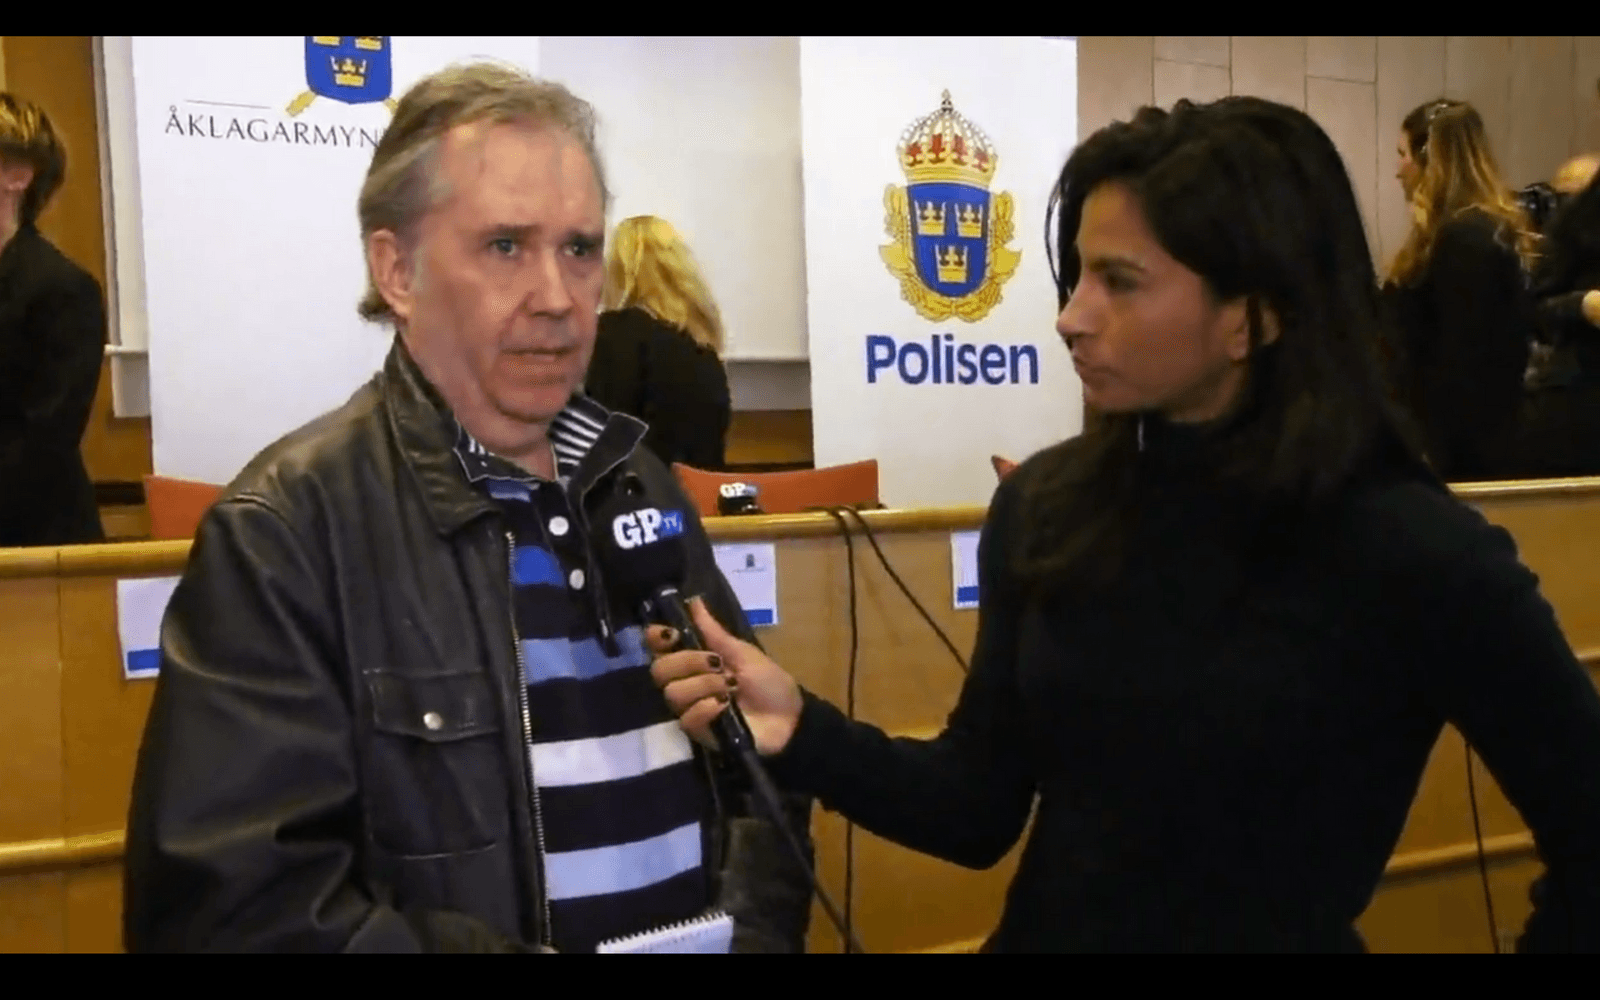 Kriminalnyheter är en av läsarnas stora favoriter på GP.se. Här intervjuas GP:s kriminalreporter Peter Linné av Cecilia Vaccari efter en presskonferens i polishuset.